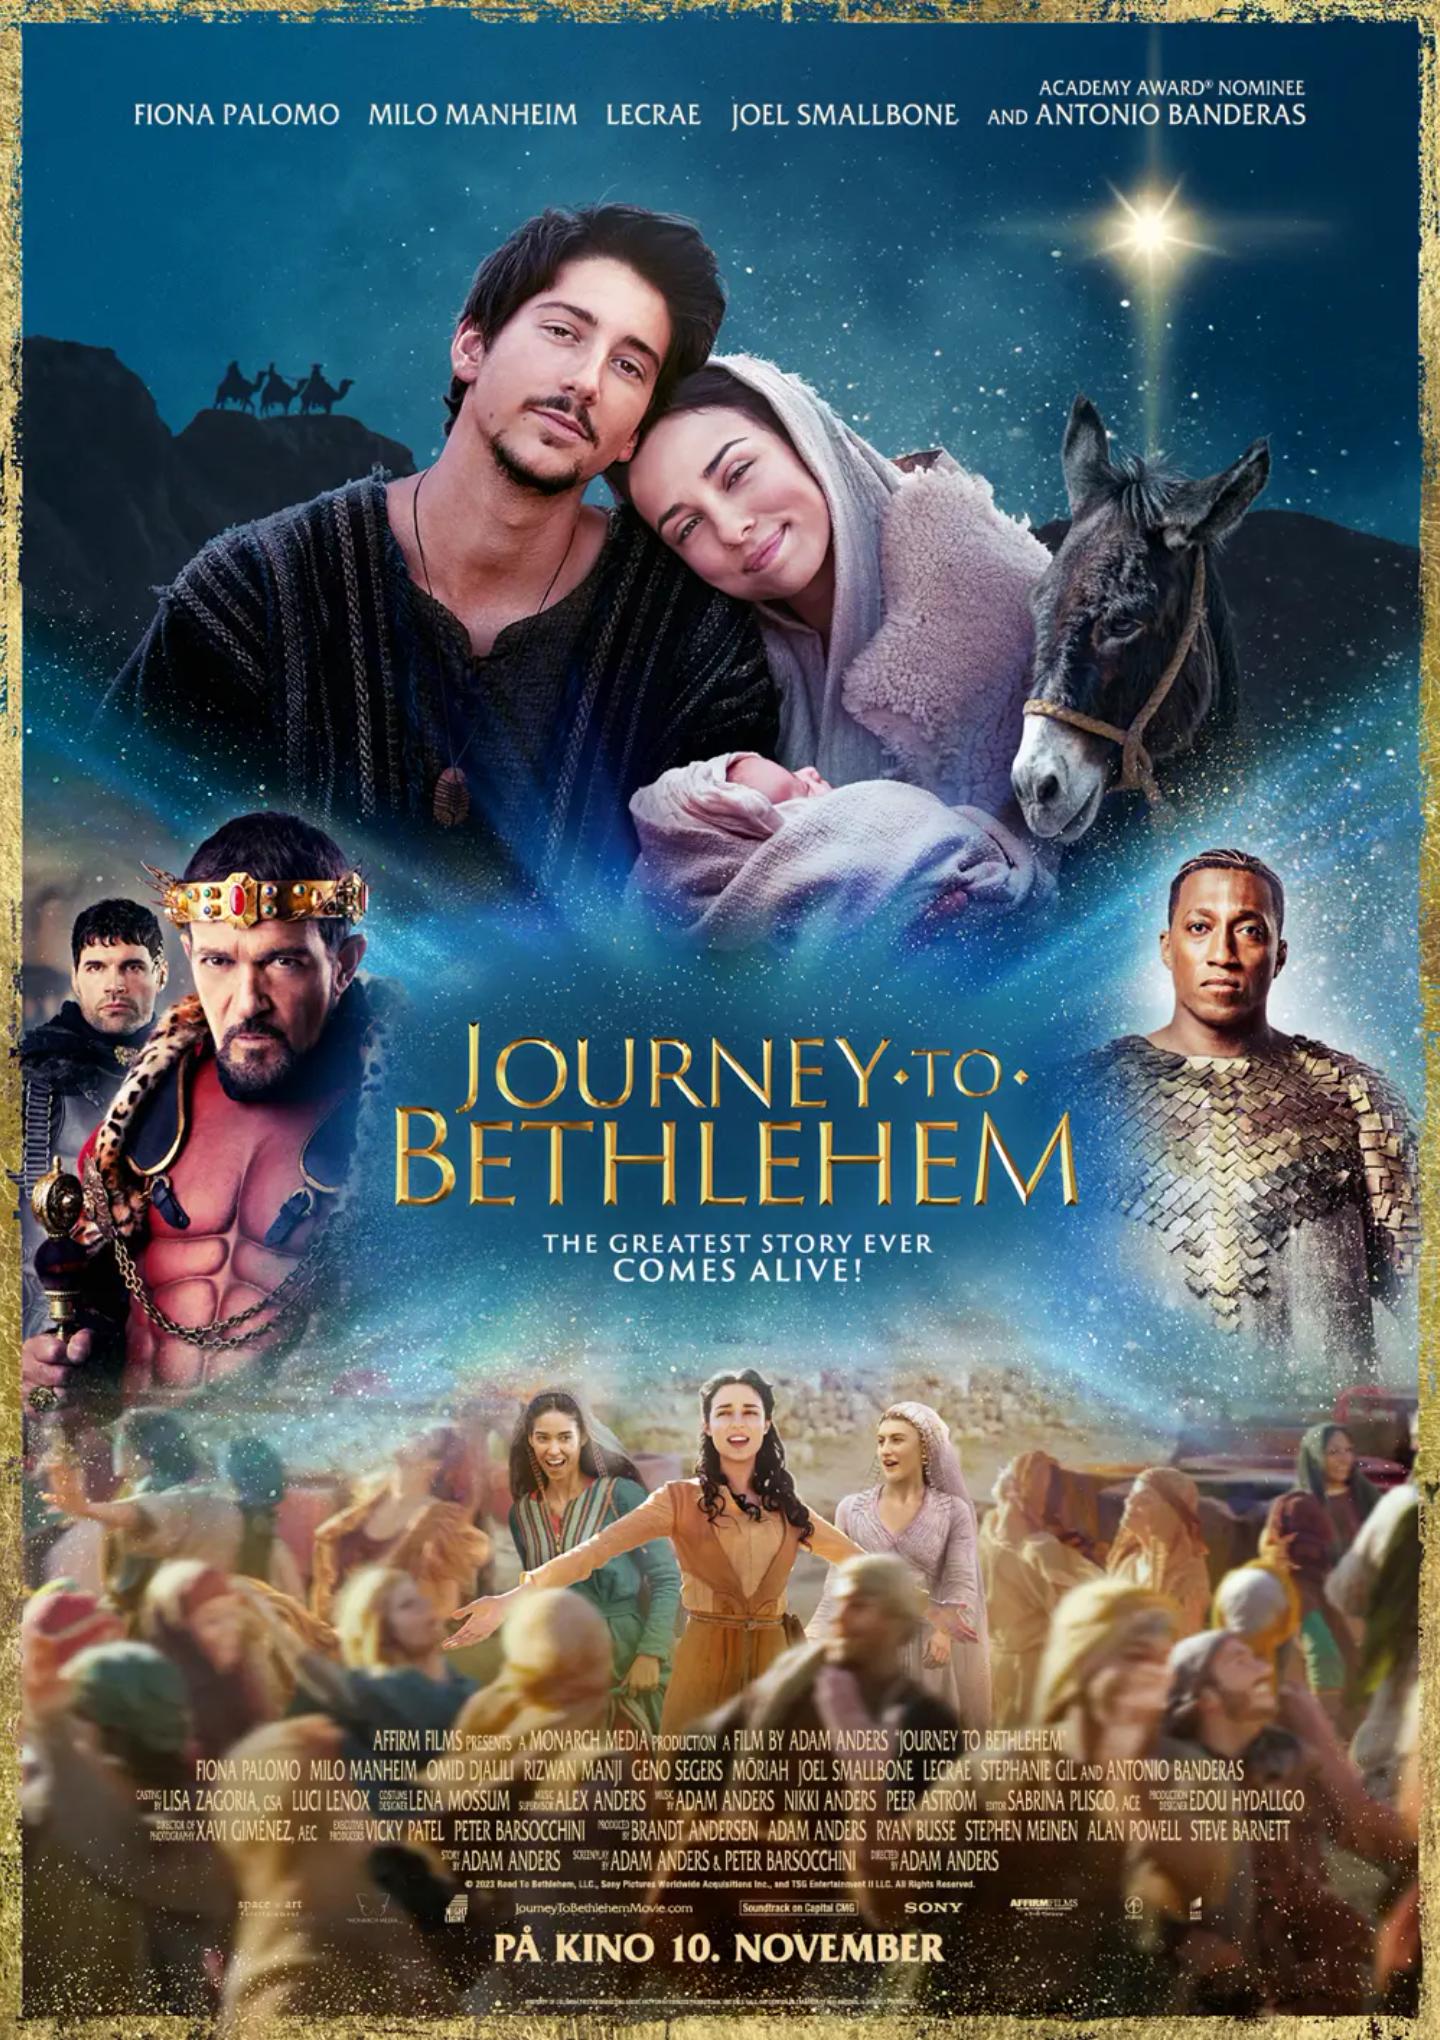 Plakat for 'Journey to Bethlehem'